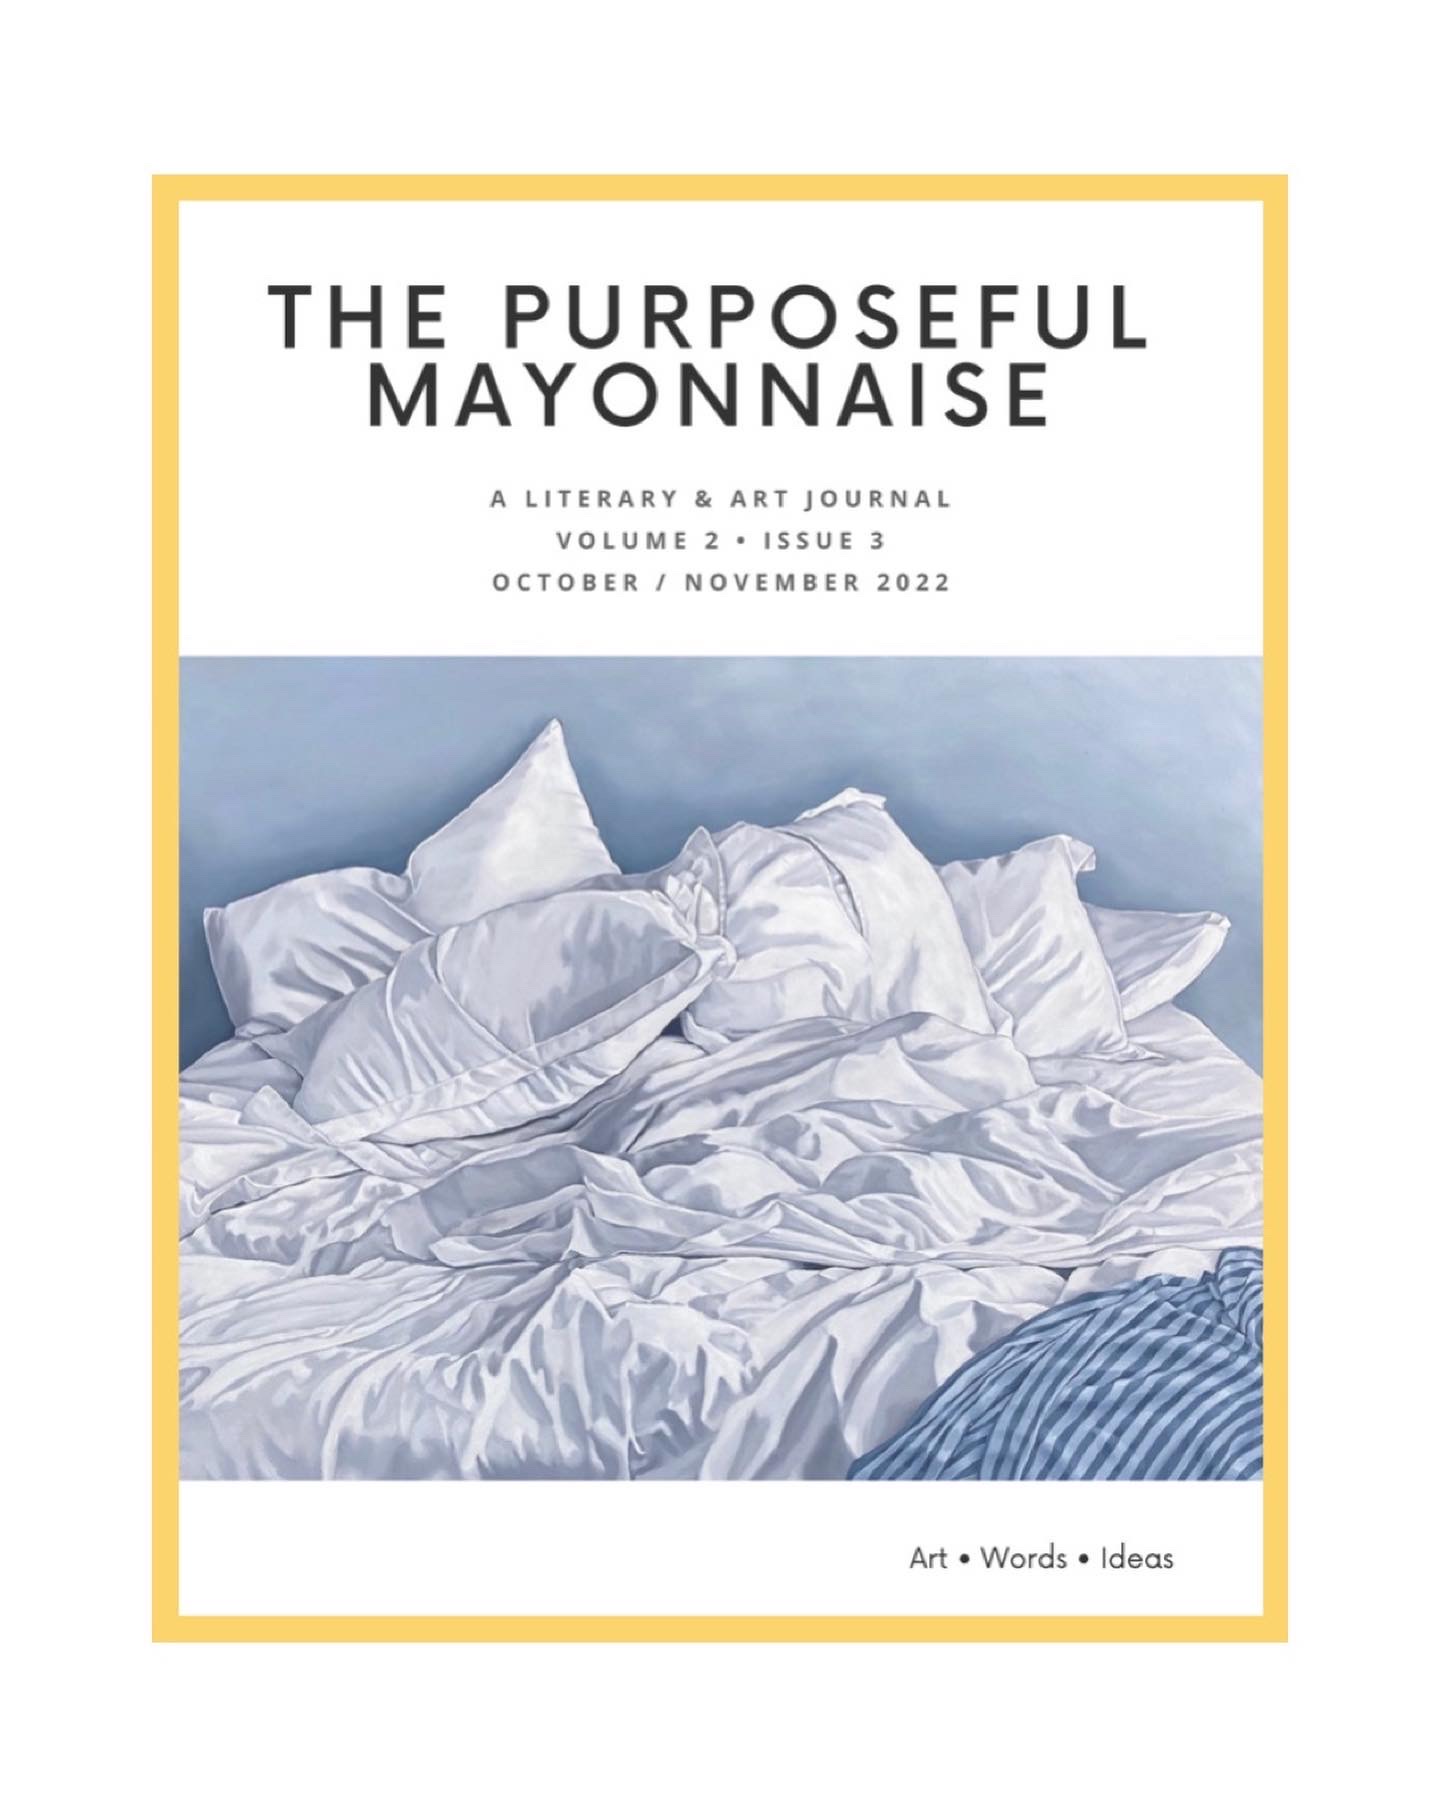 The Purposeful Mayonnaise Journal